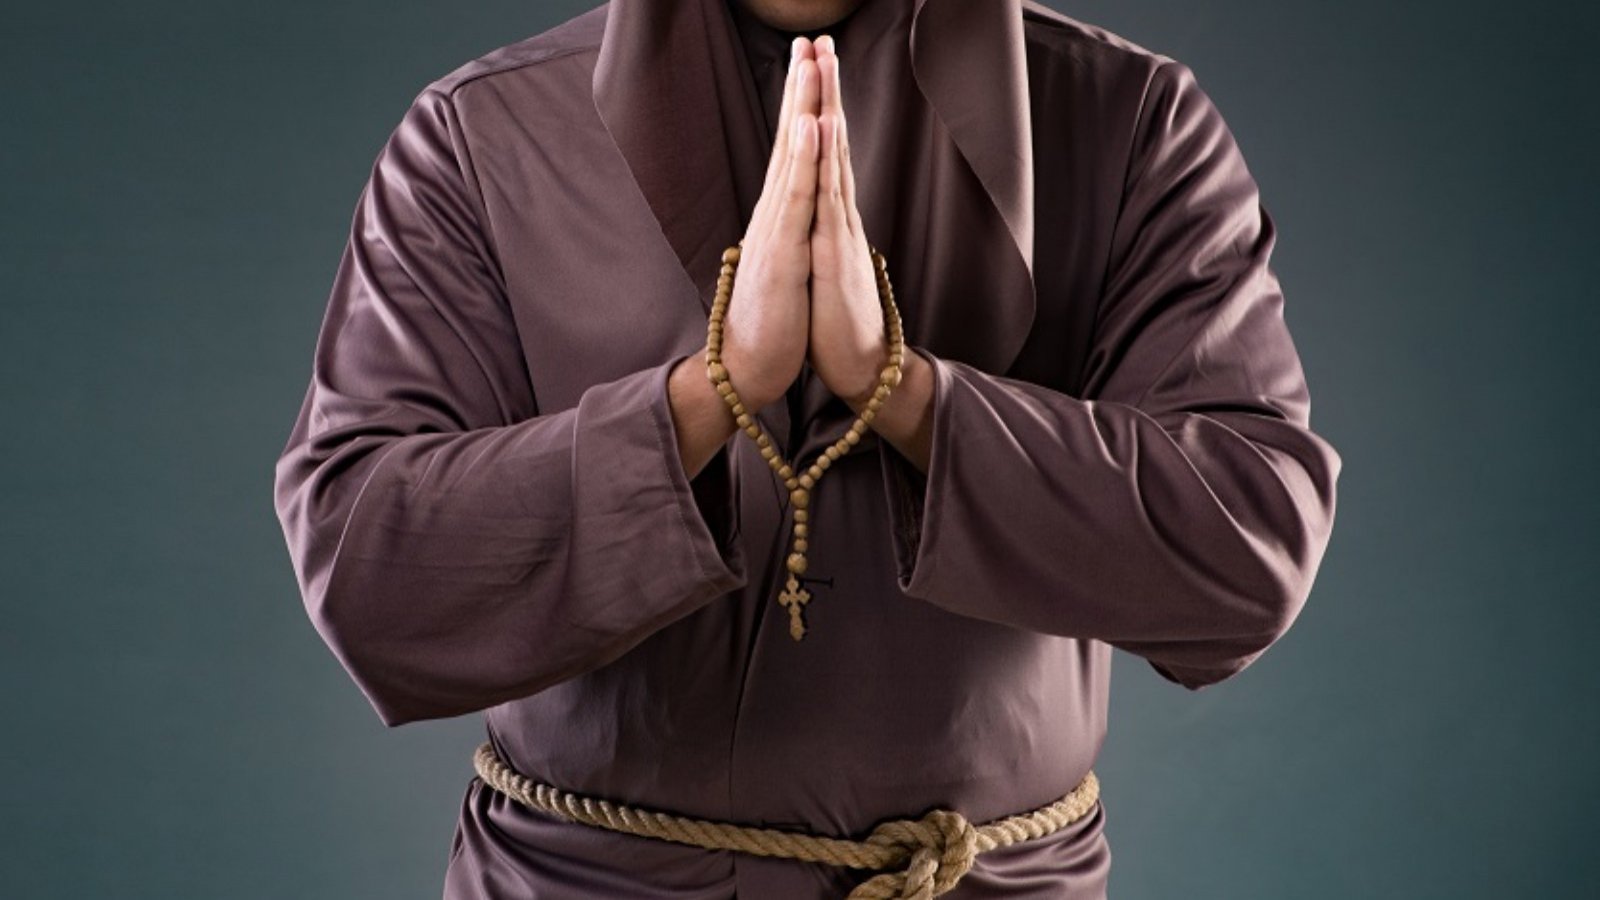 Persona en túnica de monje con las manos en posición de rezo.